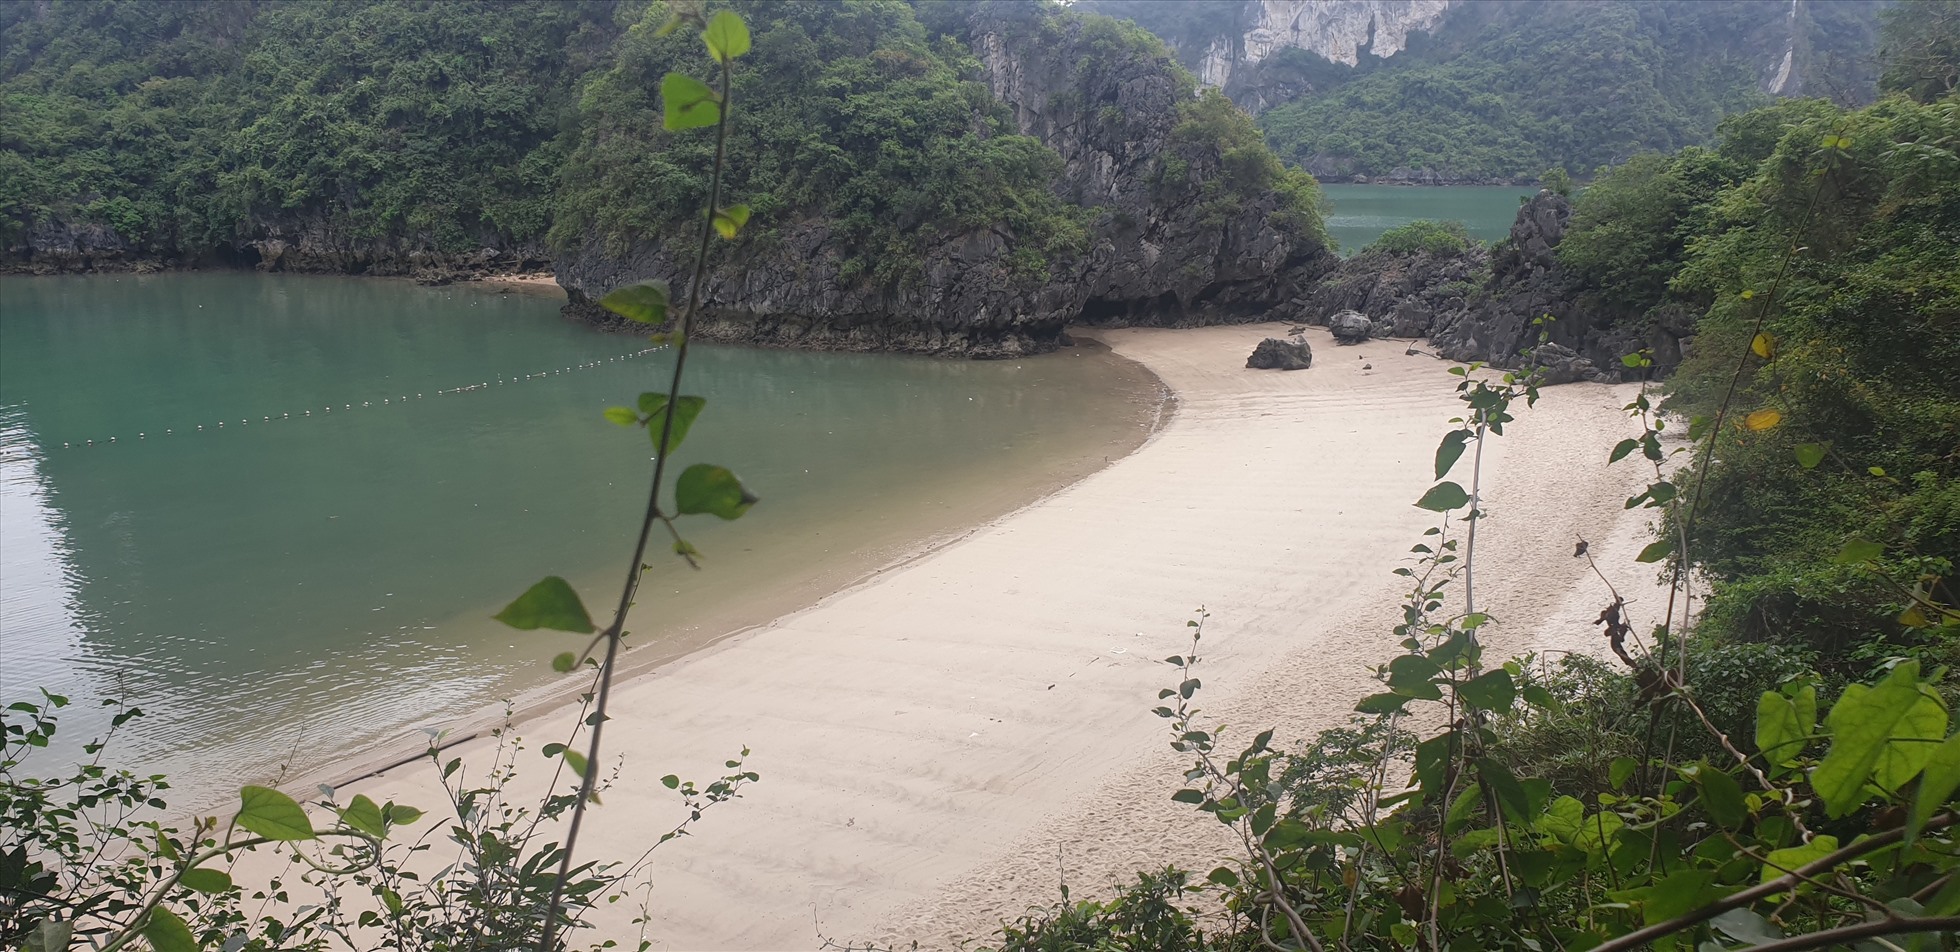 Giữa vịnh Hạ Long có hàng trăm bãi cát đẹp như thế này nhưng không được tắm vì vướng các quy định, thủ tục. Ảnh: Nguyễn Hùng